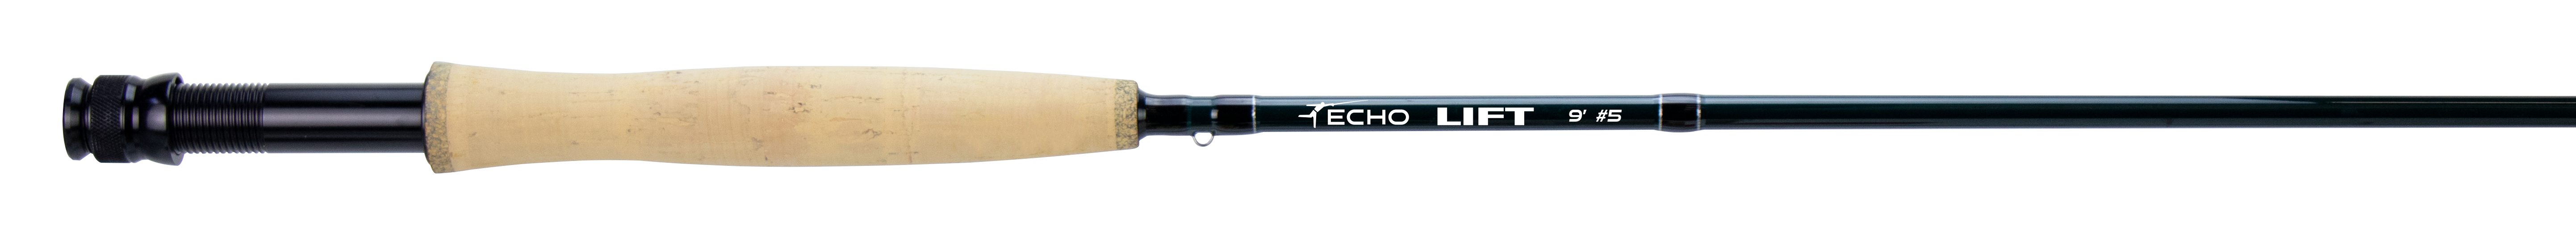 Echo Lift Fly Rod